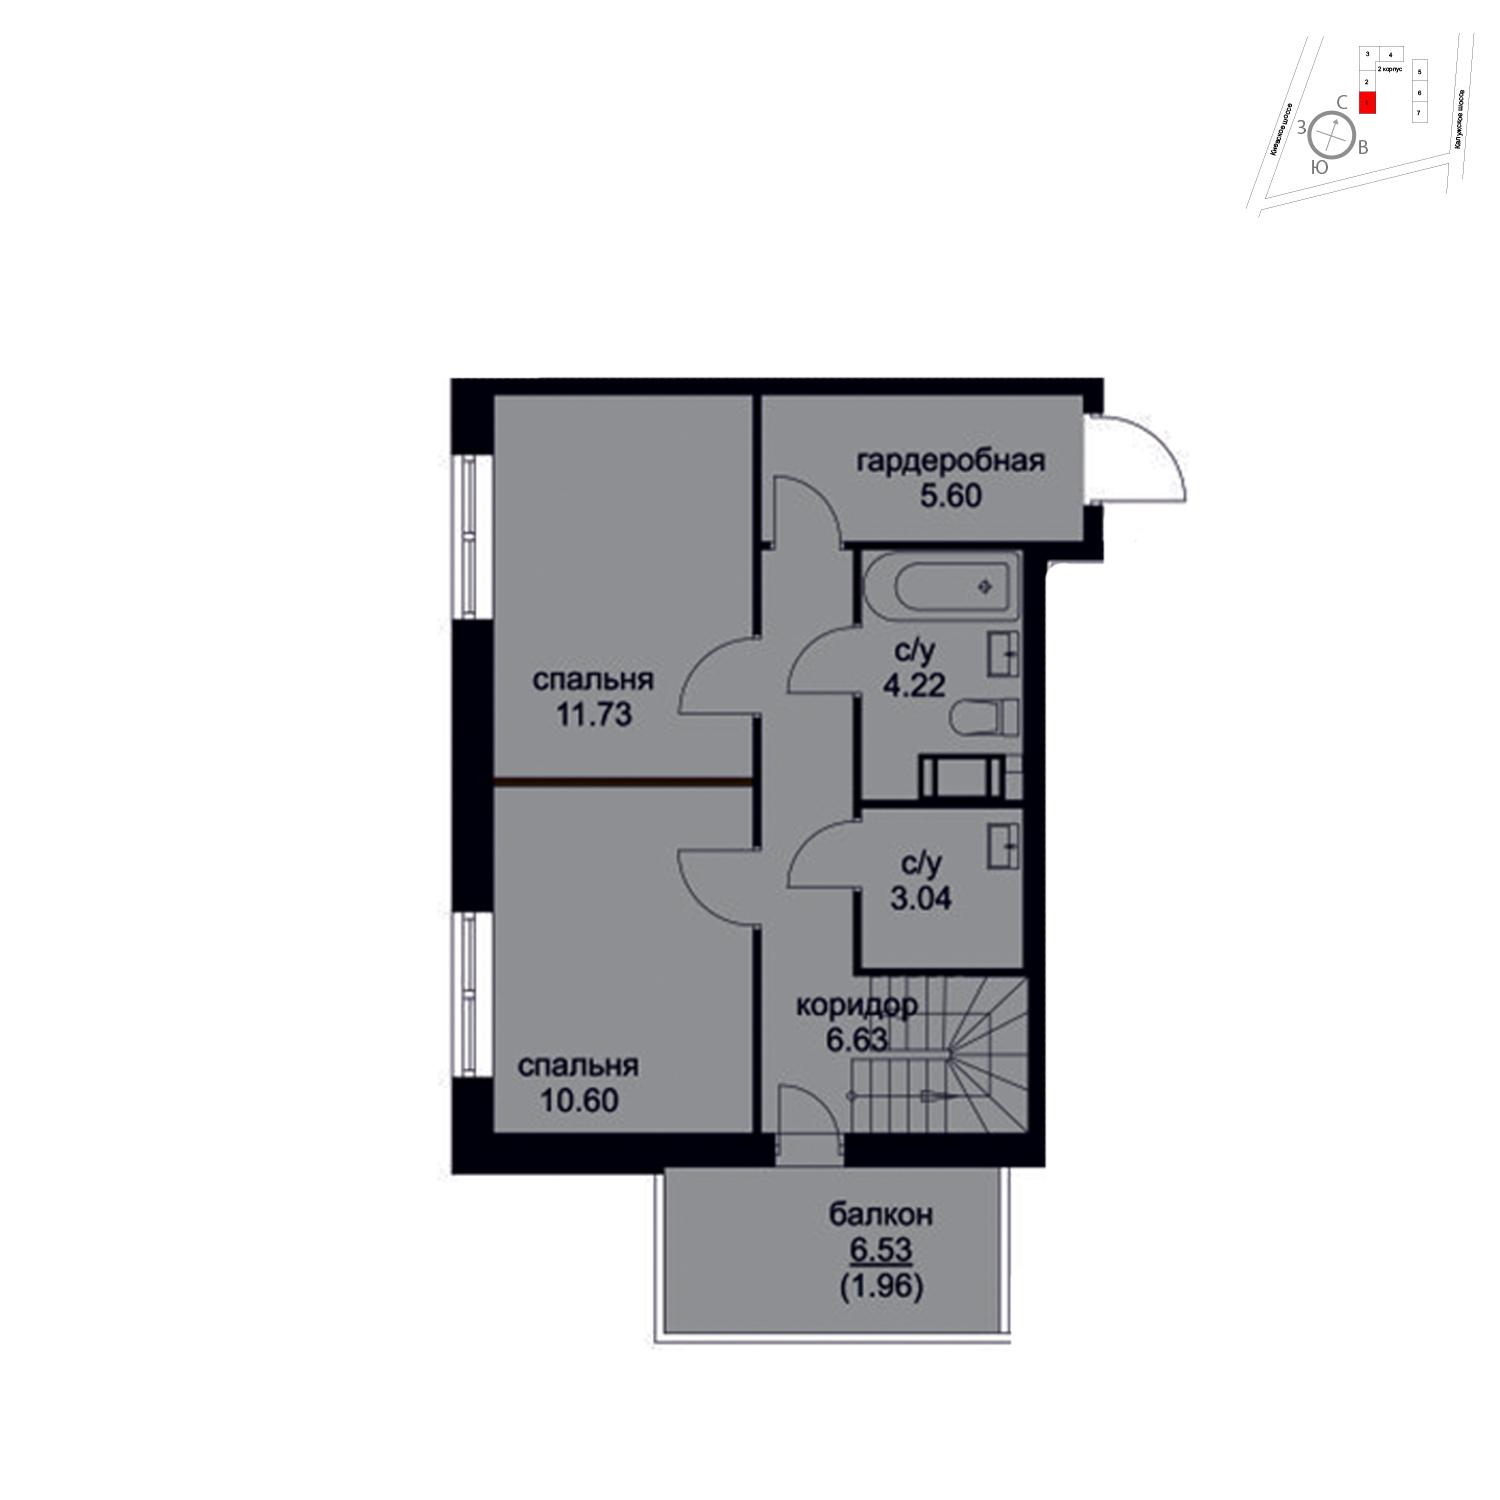 Продаётся 4-комнатная квартира в новостройке 101.5 кв.м. этаж 1/9 за 10 761 152 руб 